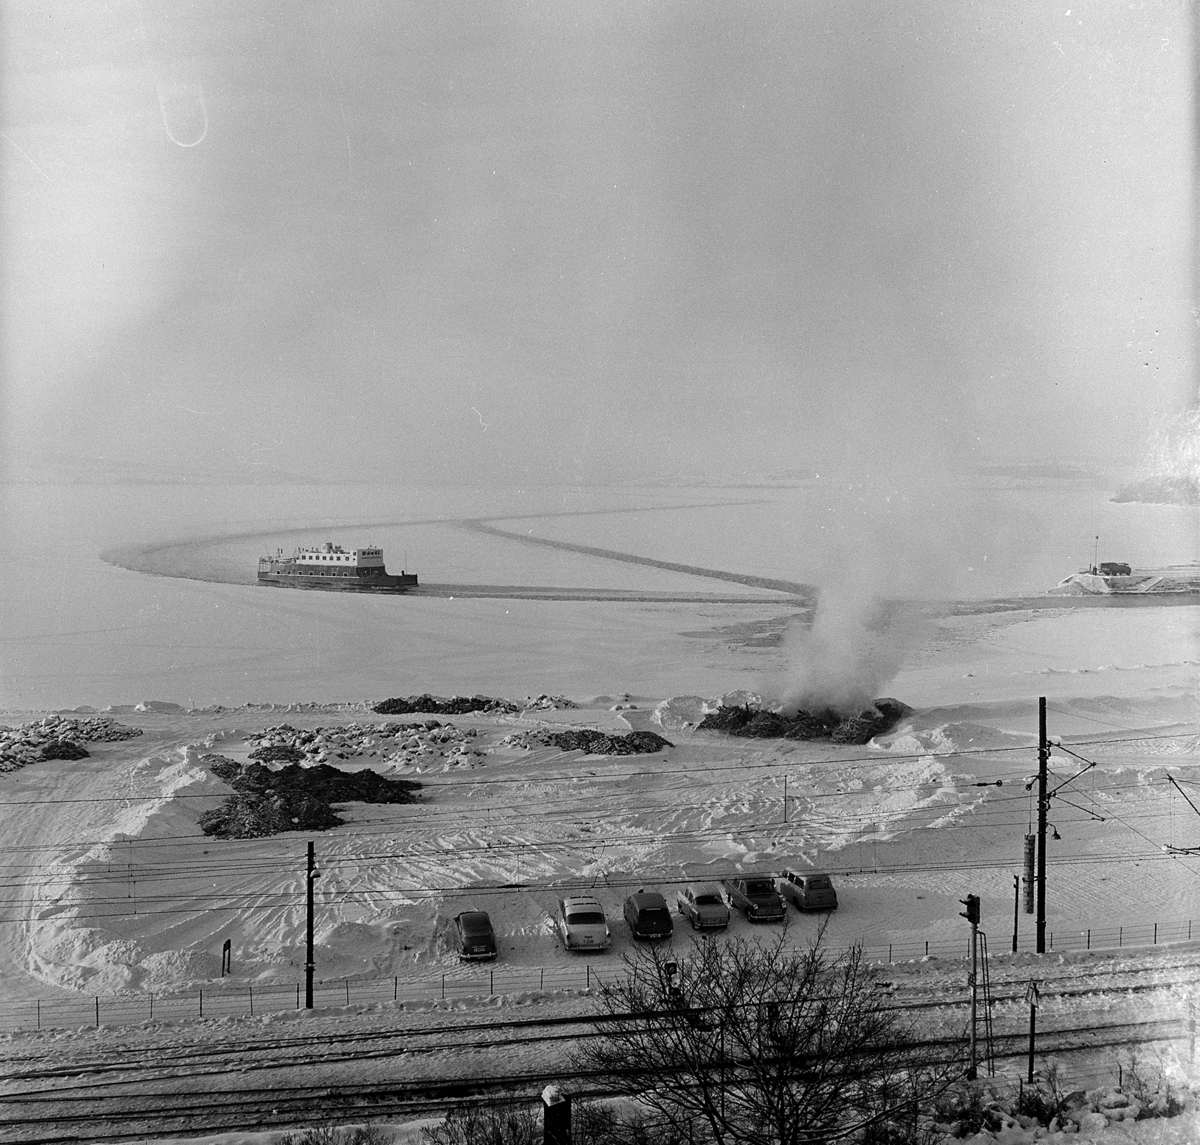 Hamarbukta, Hamar-Kapp Ferjen, mjøsbåt, i råk i mjøsisen, utenfor Hamar Brygge, senvinteren 1967. Bål, avfallsbrenning, bygningsrester åttemetersplanet. 